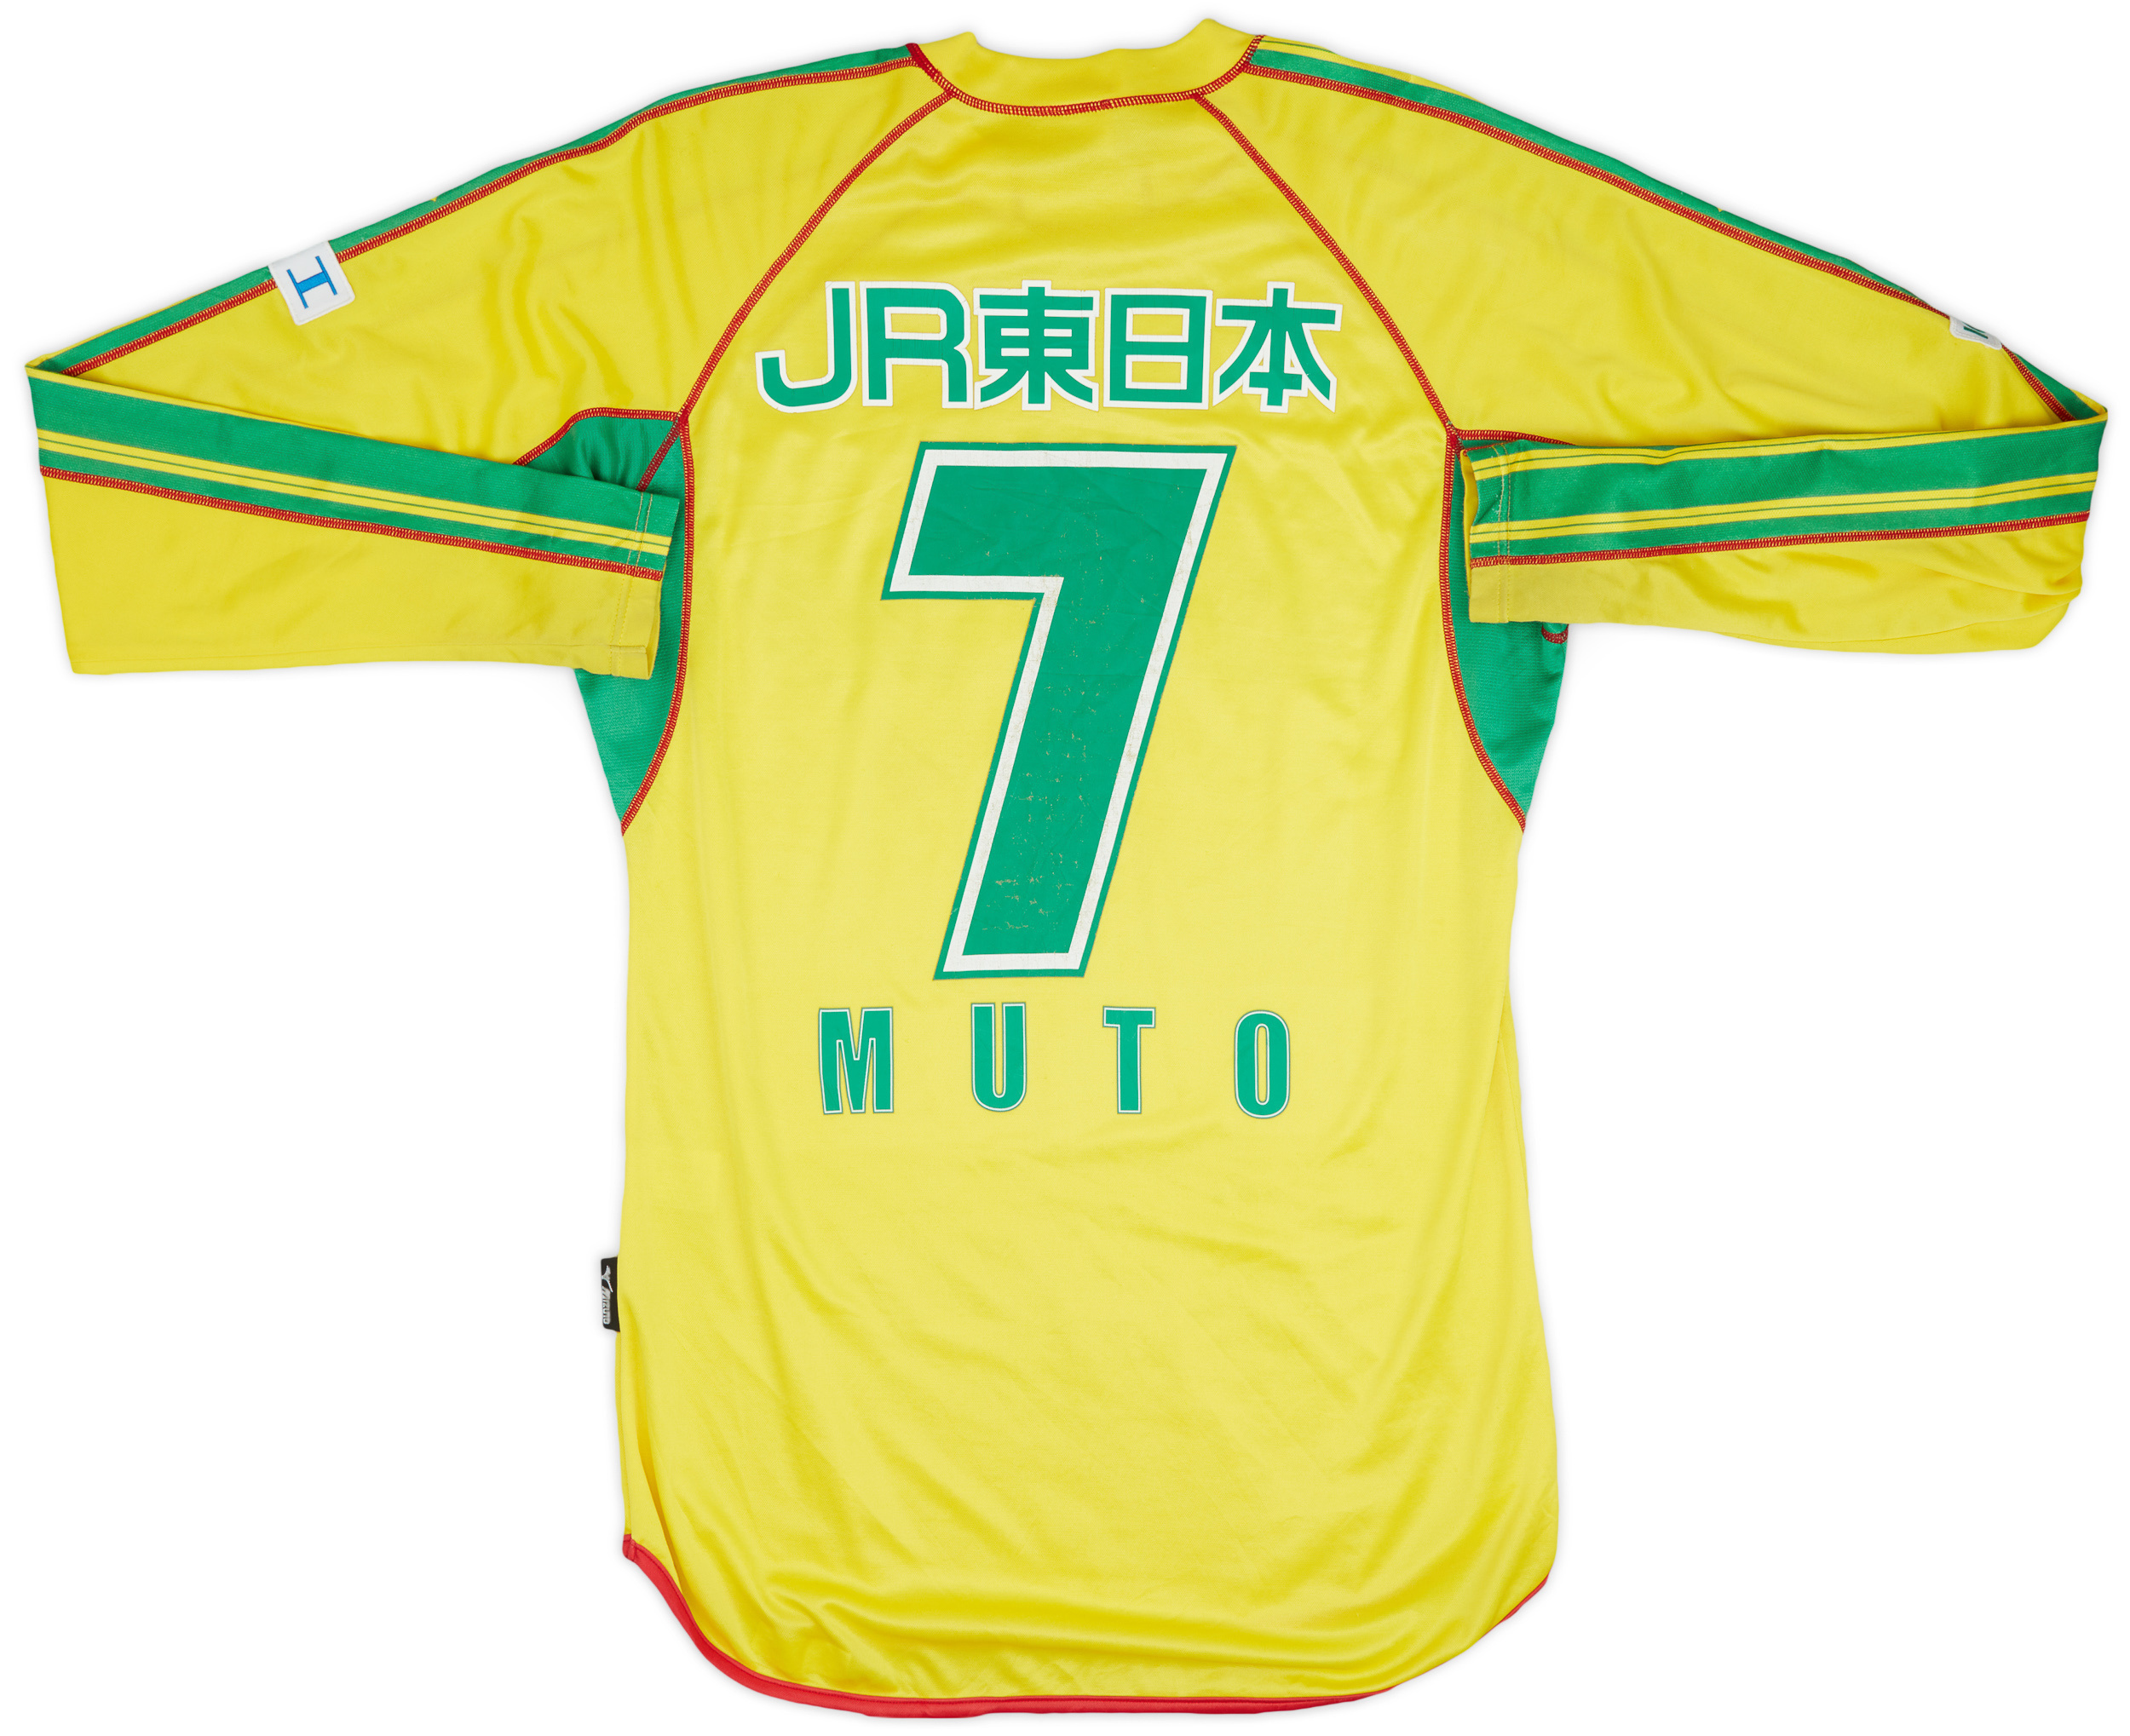 Retro JEF United Ichihara Chiba Shirt